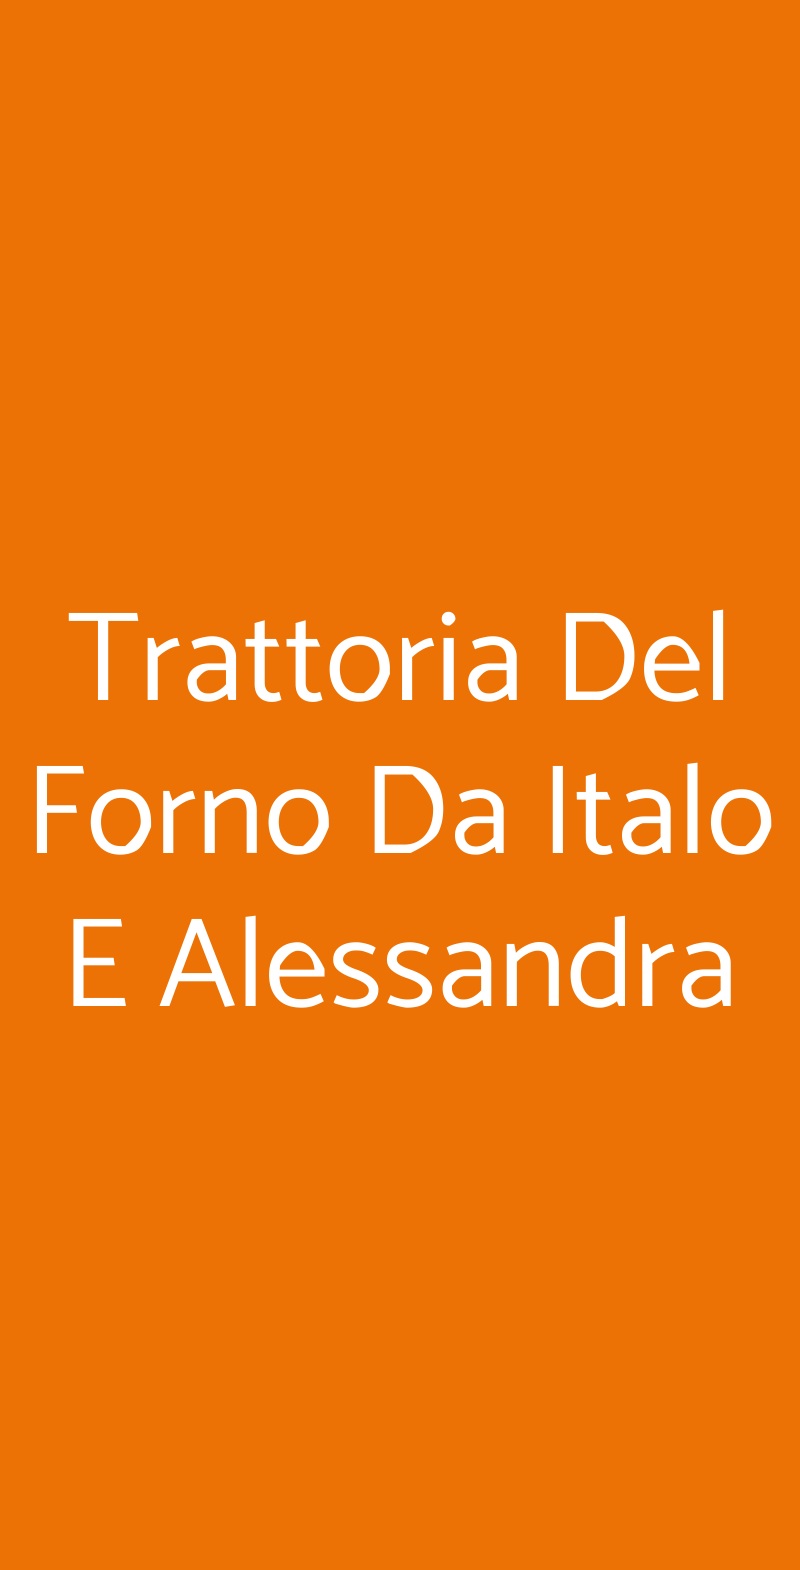 Trattoria Del Forno Da Italo E Alessandra Monte San Savino menù 1 pagina